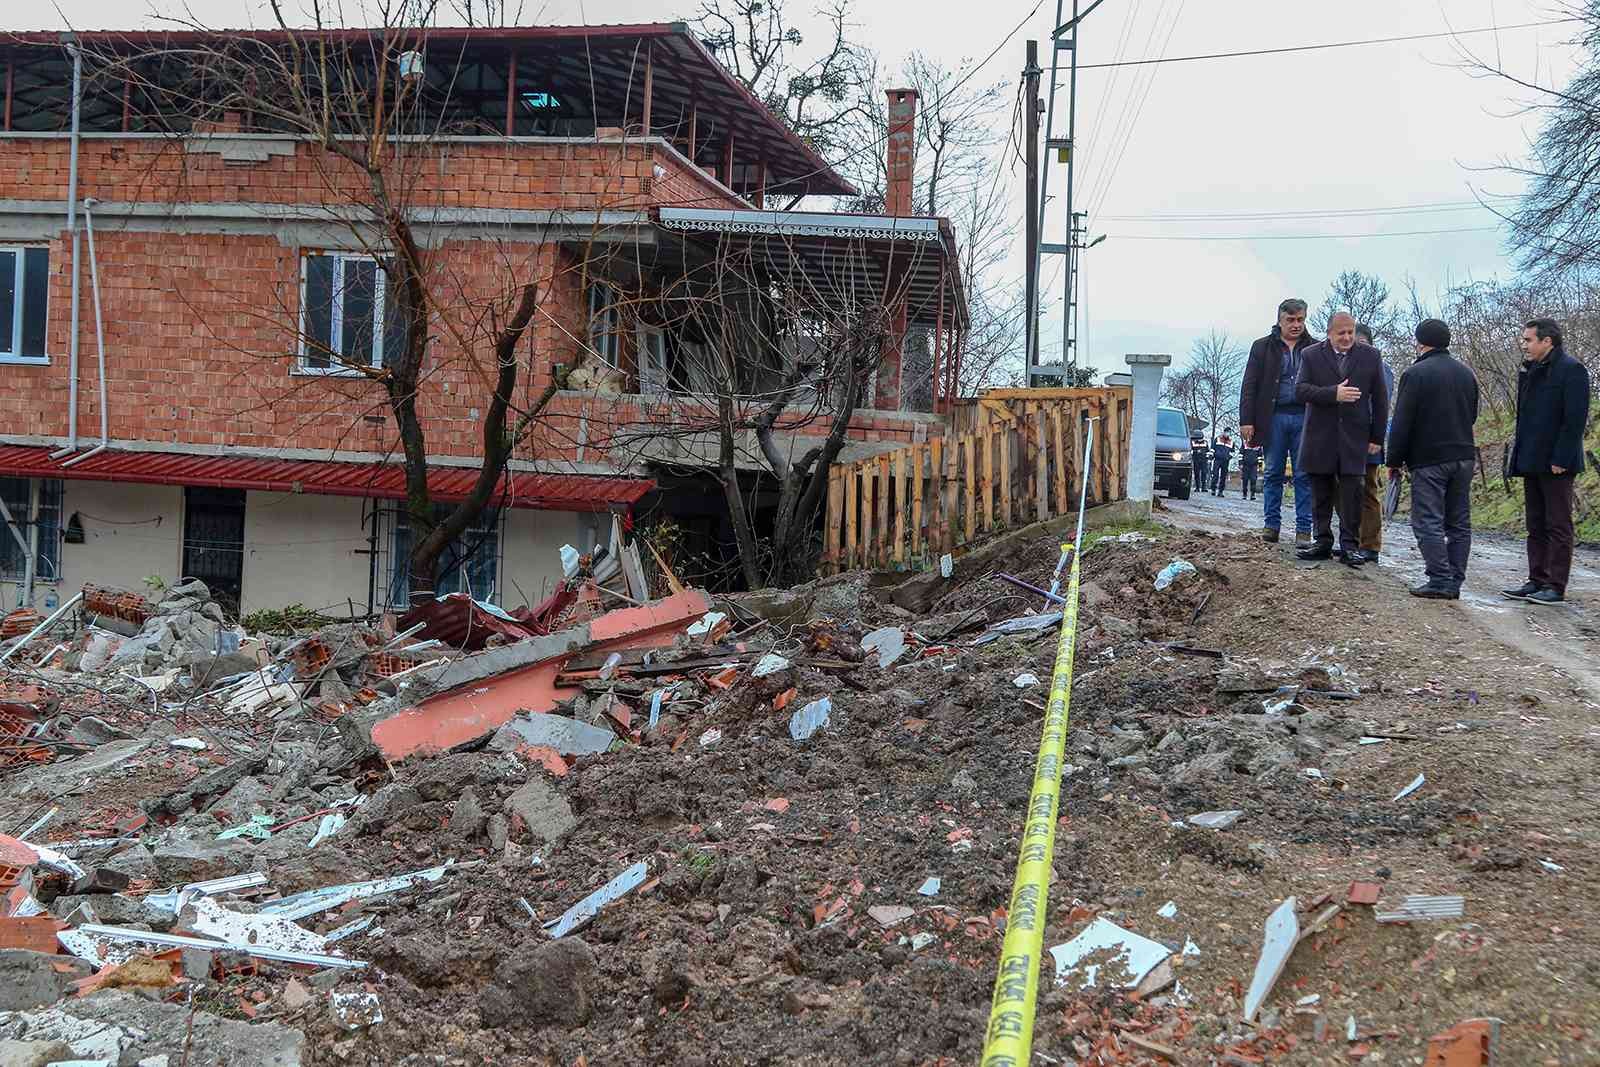 Ordu’da heyelan riski taşıyan 14 binanın yıkımı başladı #ordu